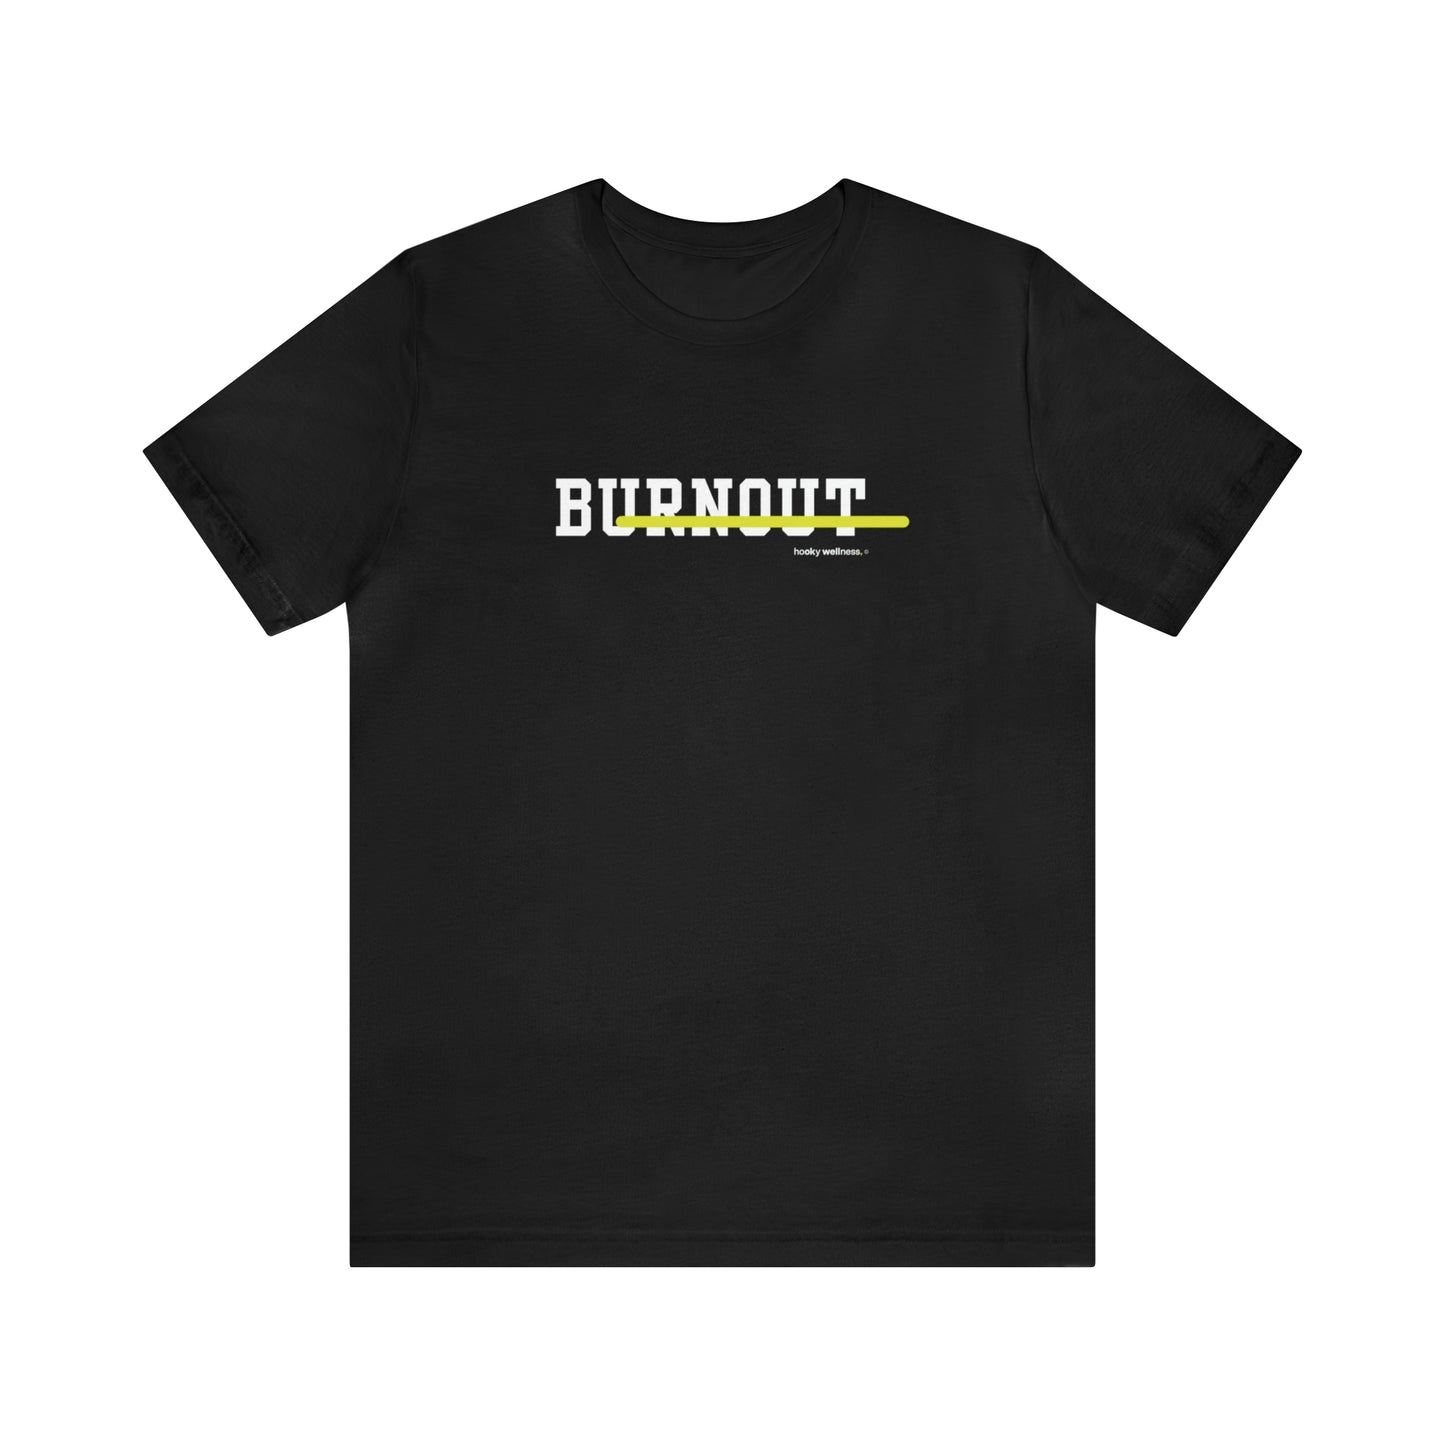 Stampout Burnout Crewneck T-shirt